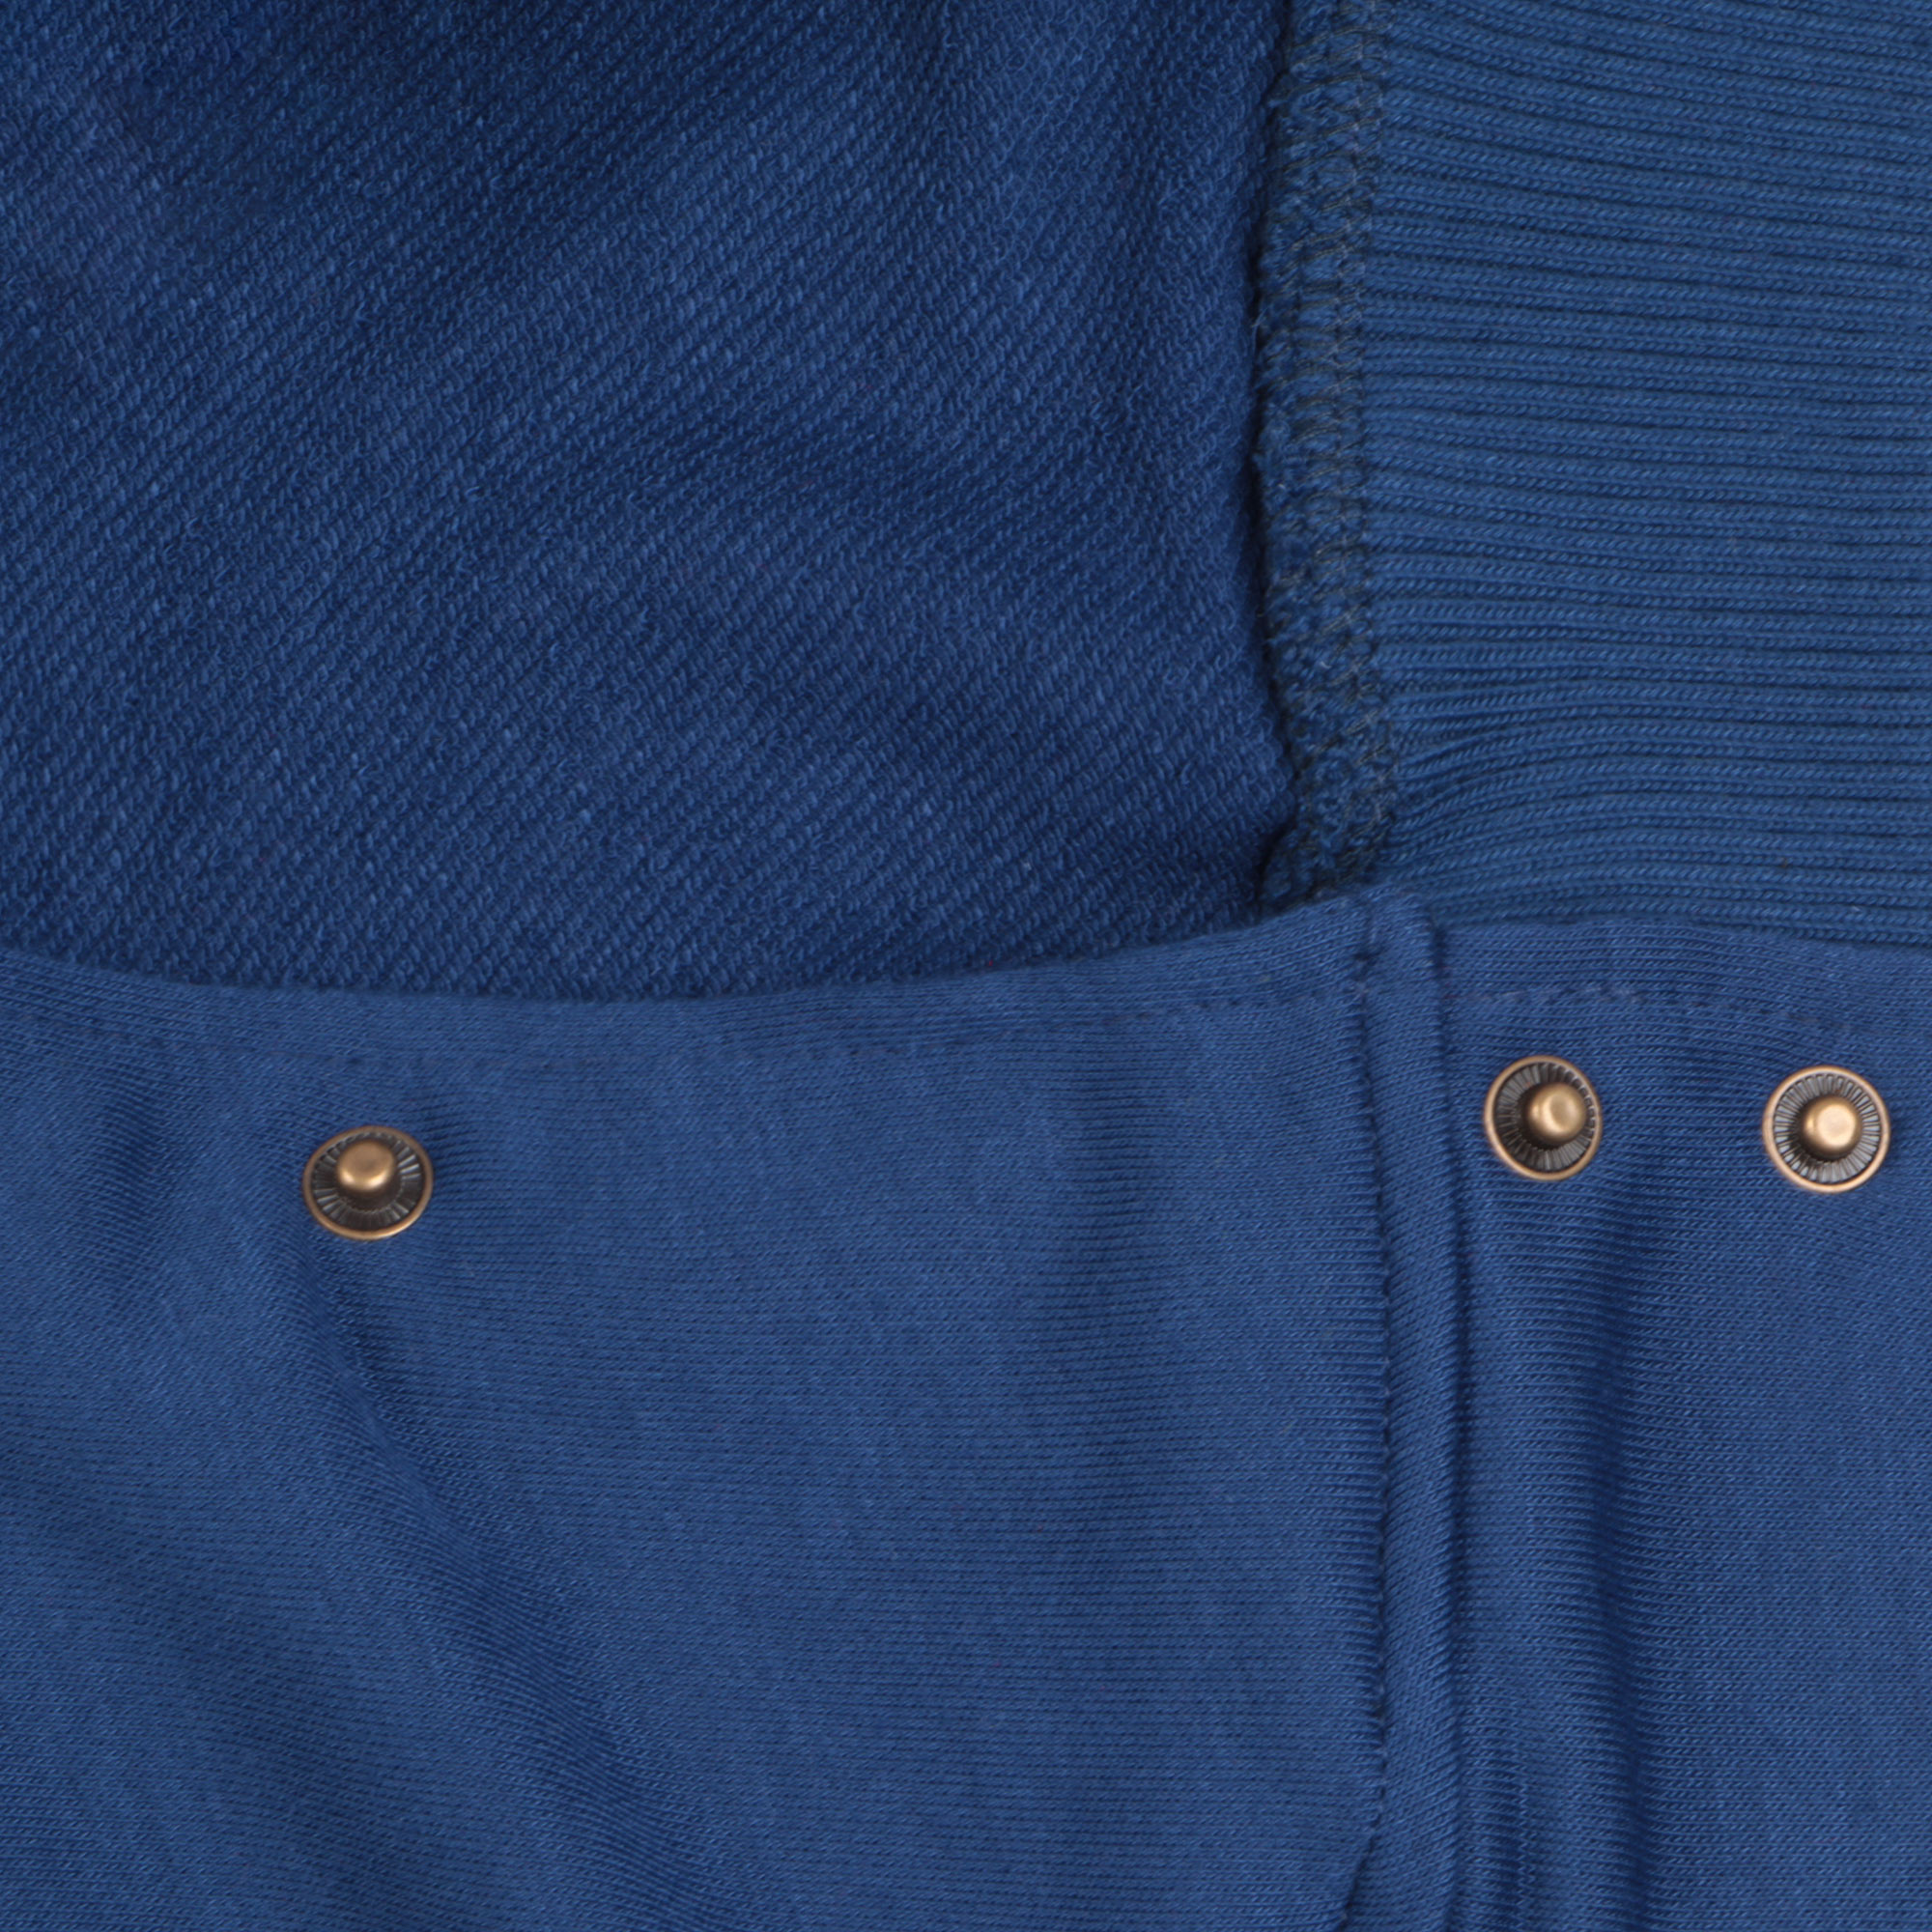 Бомбер Garment тёмно-синий/белый XL полиэстер, цвет темно-синий, размер XL - фото 4